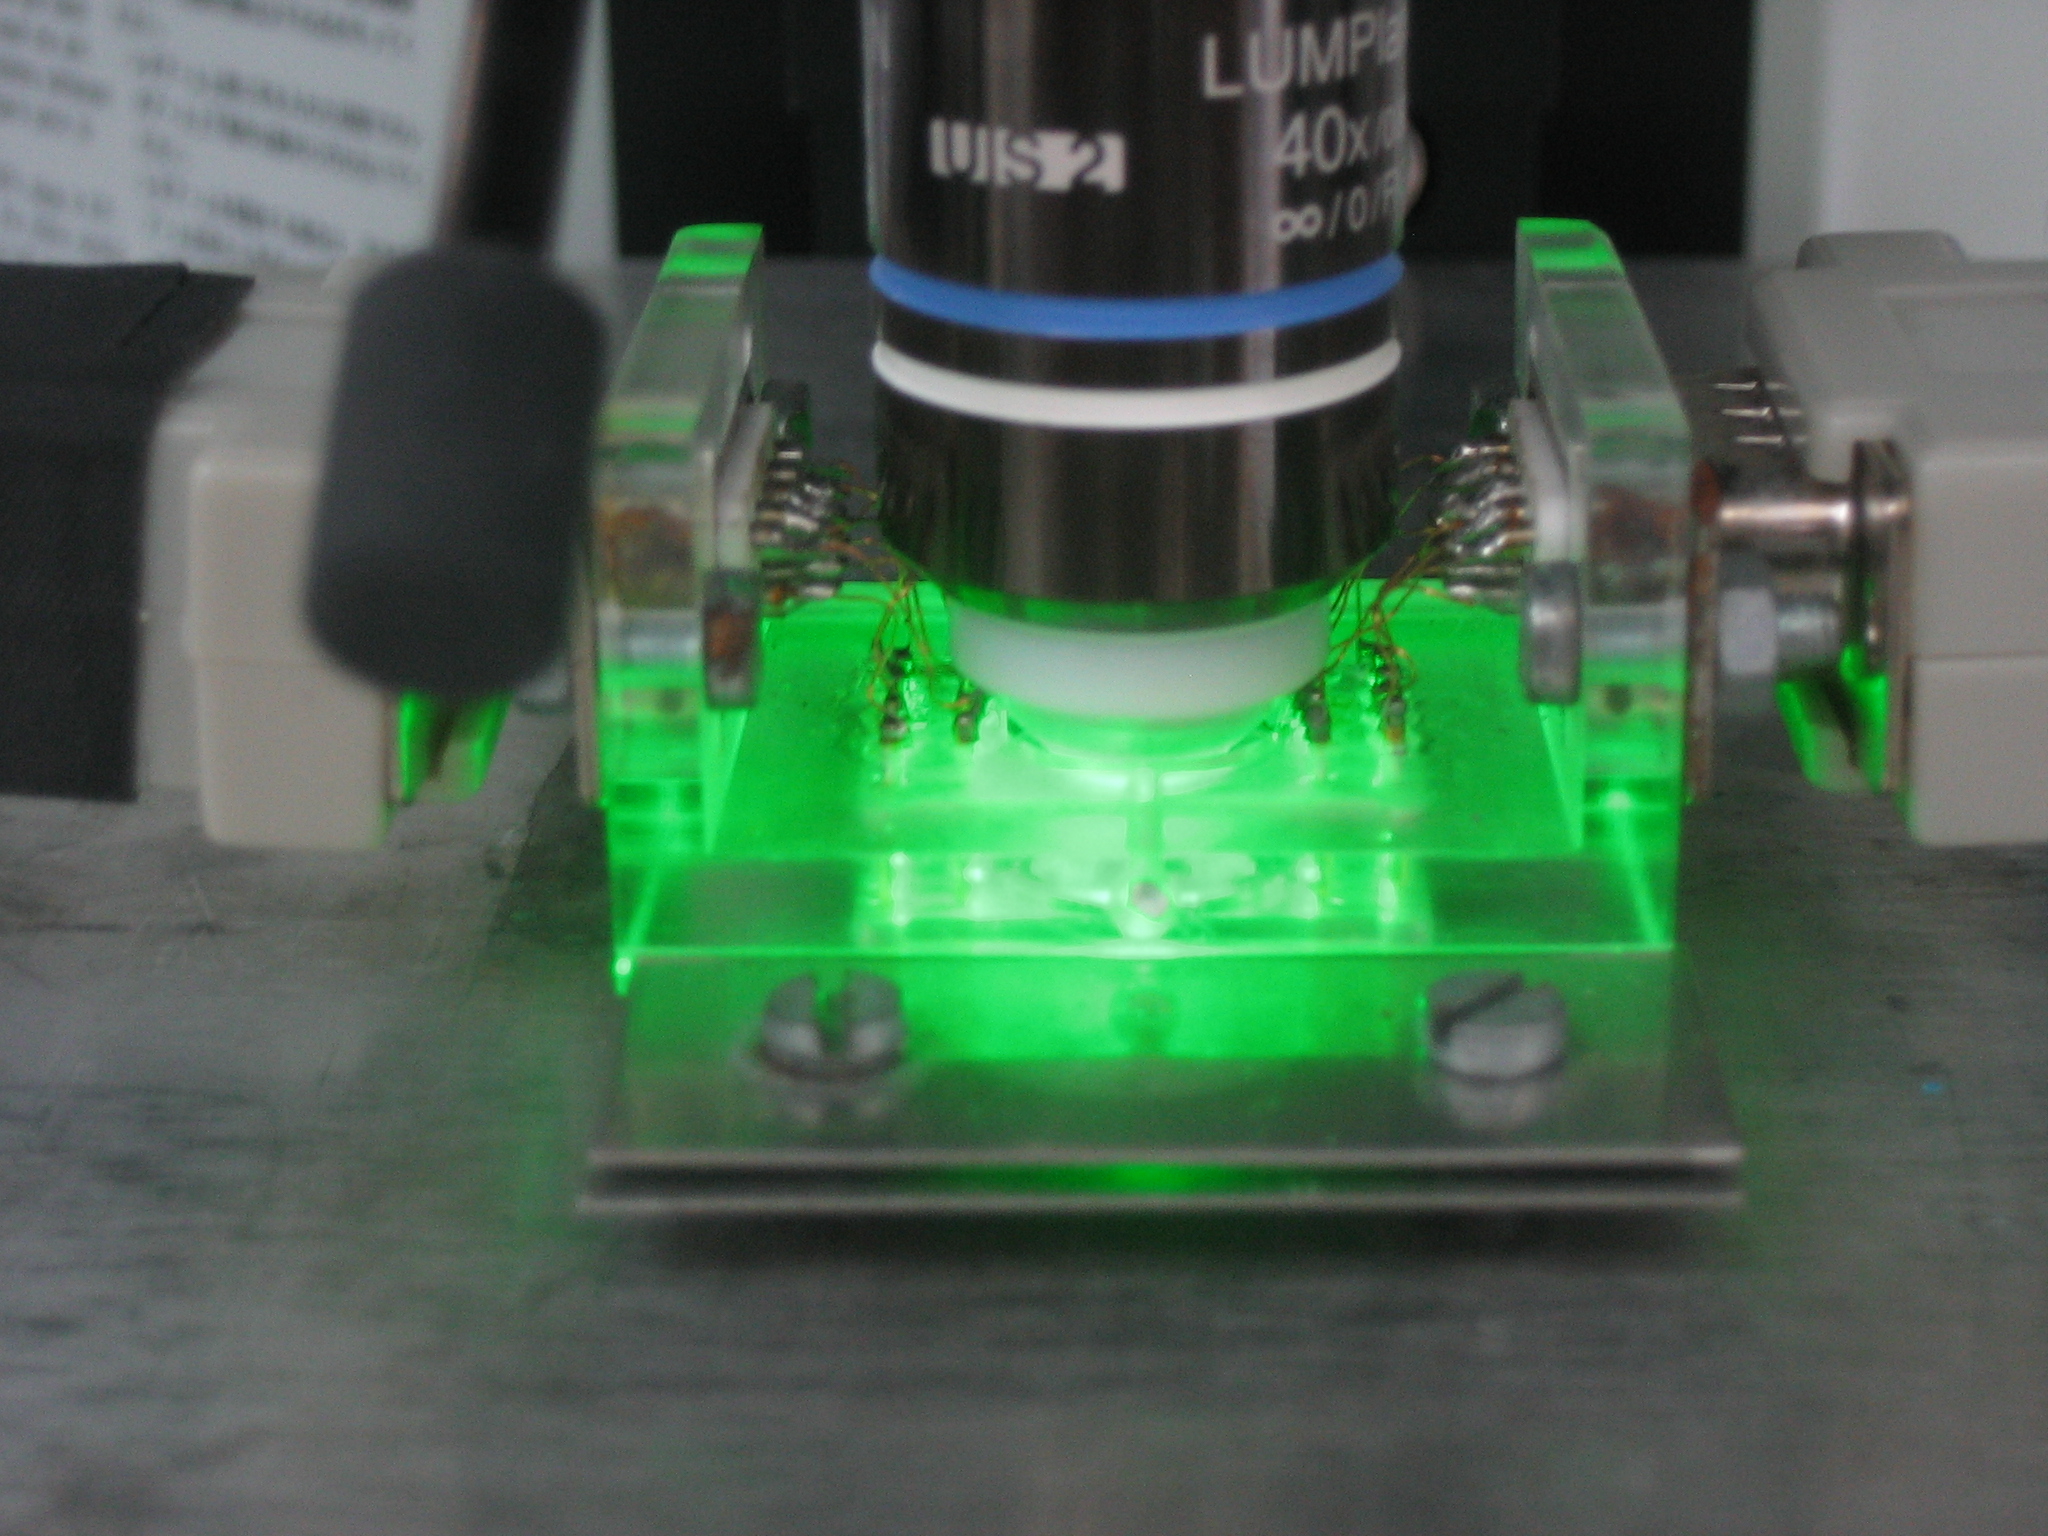 Zu sehen ist ein in eine Apparatur eingespannter Glasquader, der grünlich leuchtet.